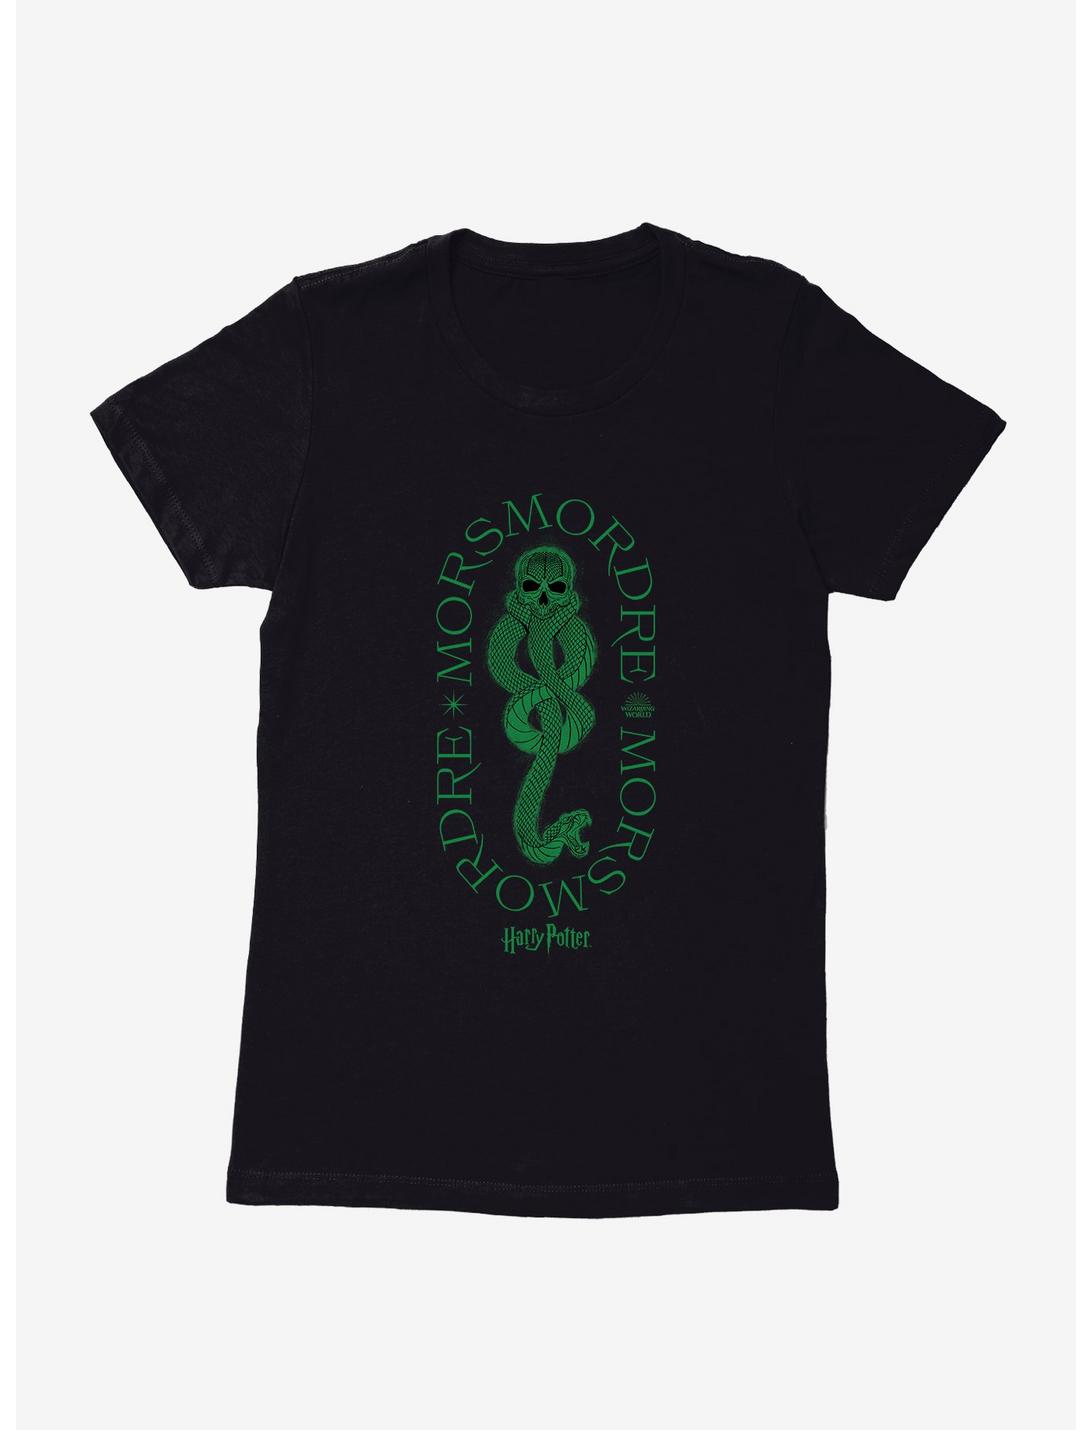 Harry Potter Morsmordre Death Eater Dark Mark Womens T-Shirt, , hi-res